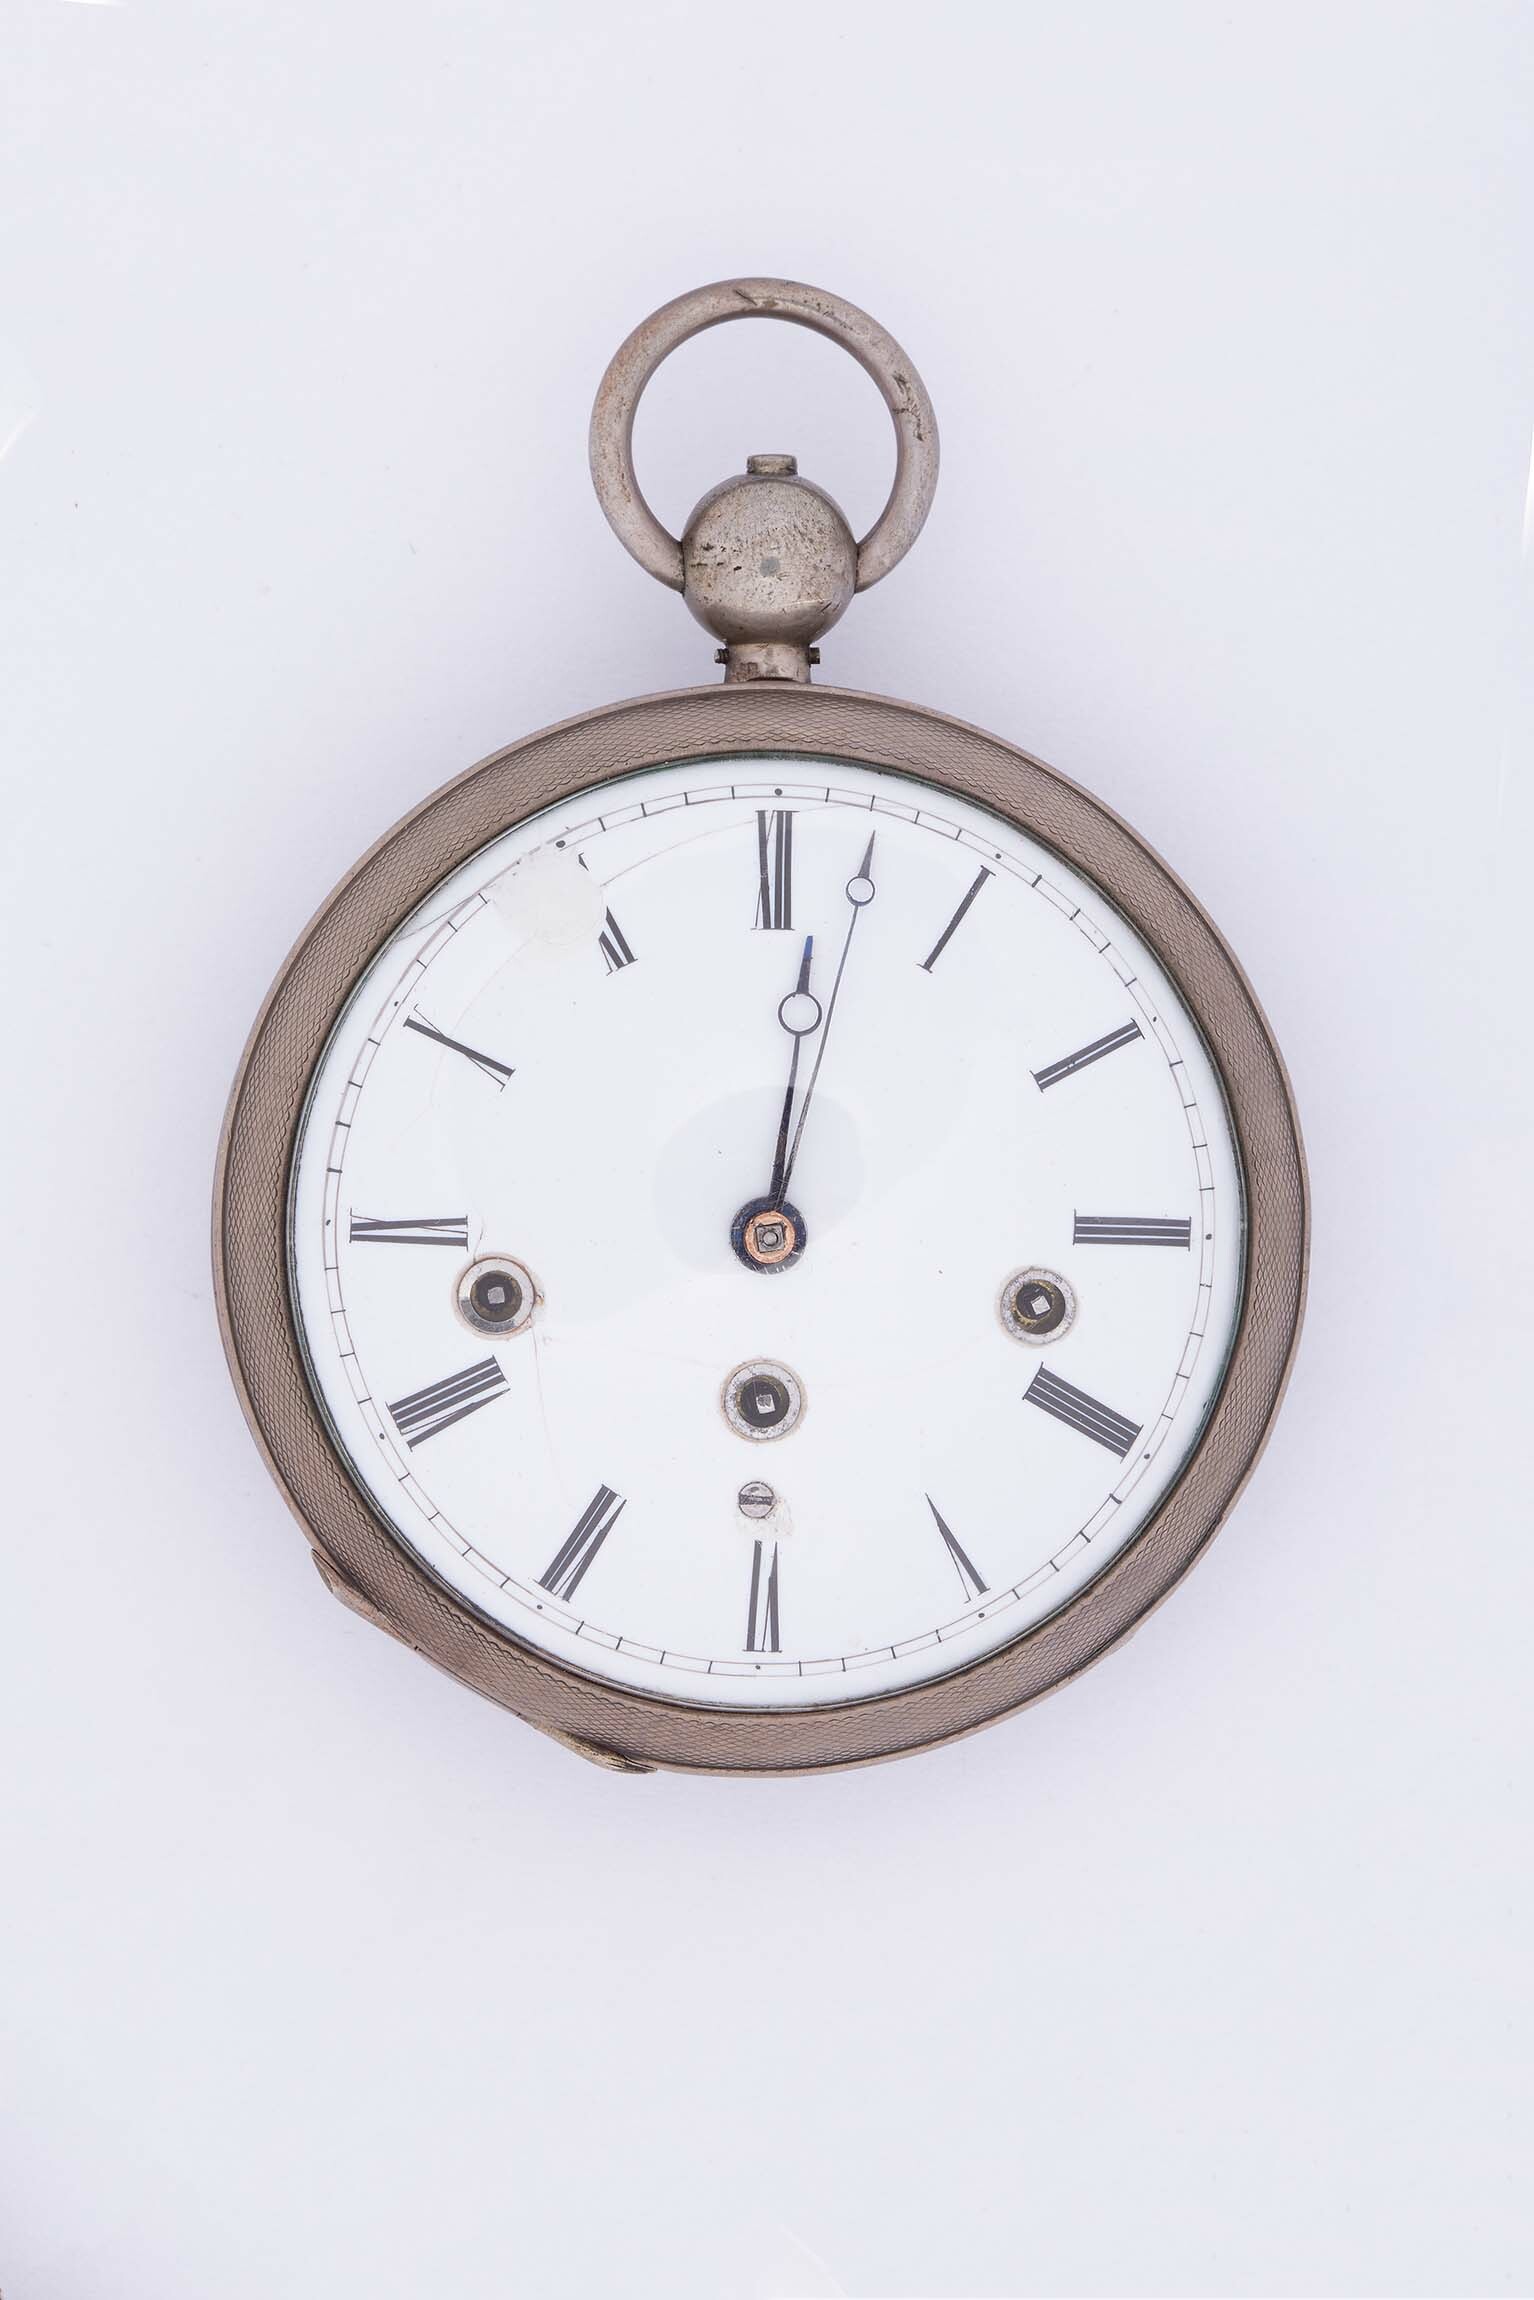 Taschenuhr, Sauer, Erlangen, um 1820 (Deutsches Uhrenmuseum CC BY-SA)